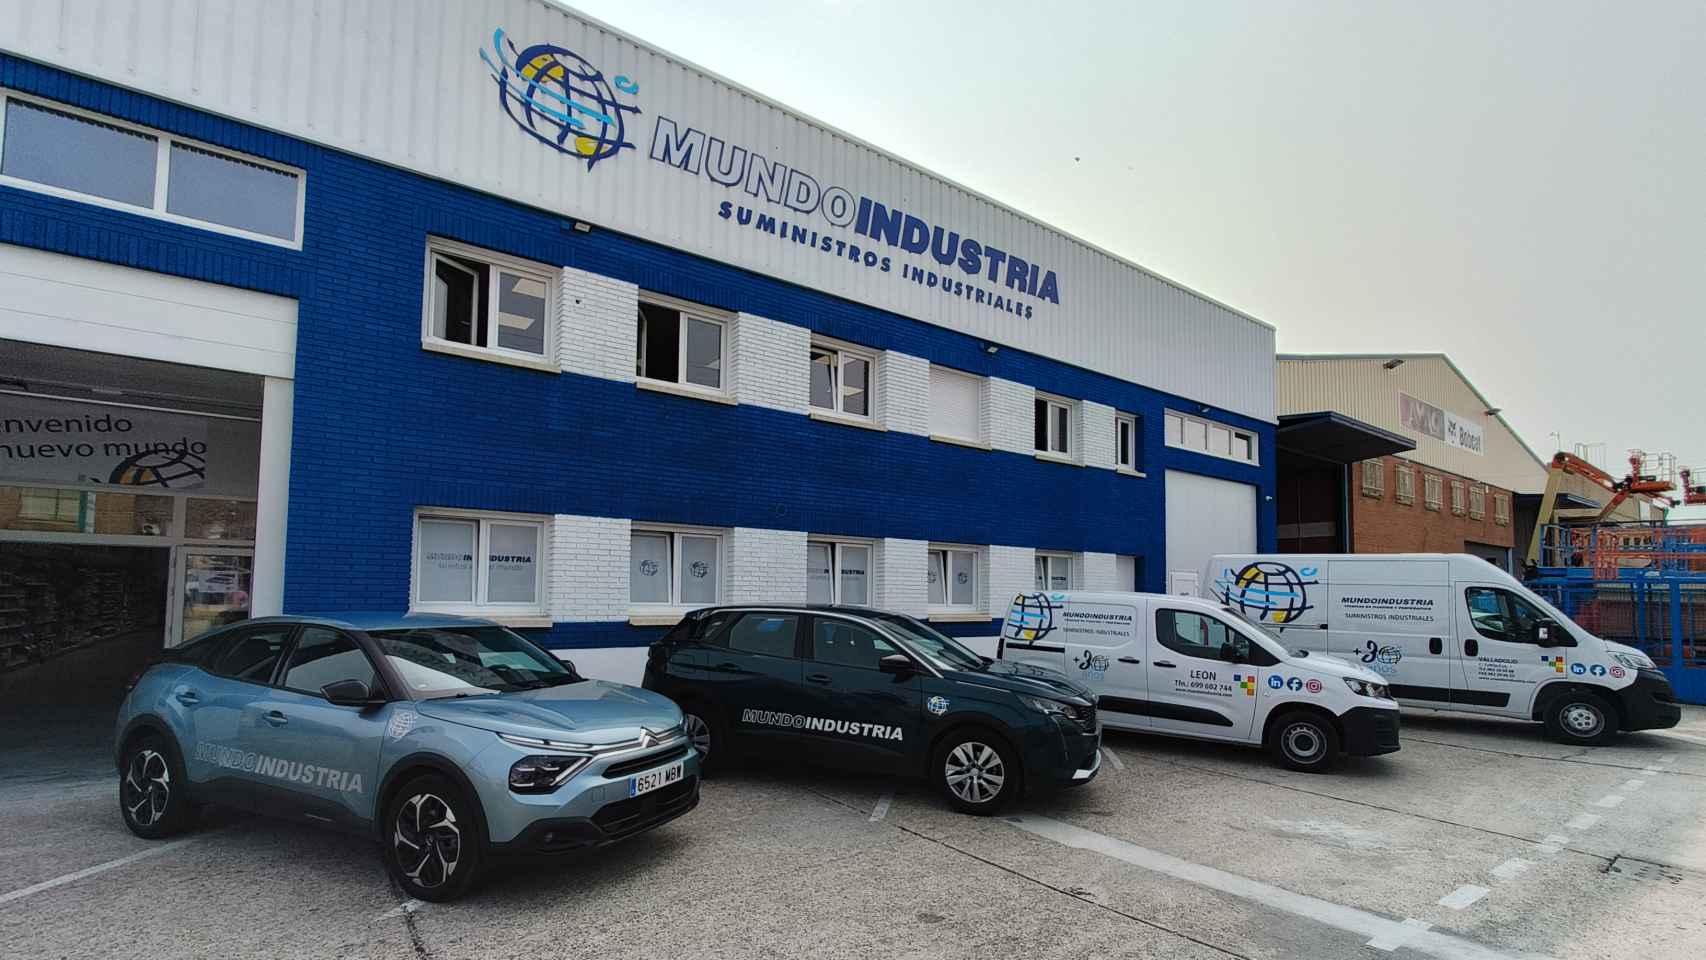 Imagen de las nuevas instalaciones de Mundo Industria en Valladolid